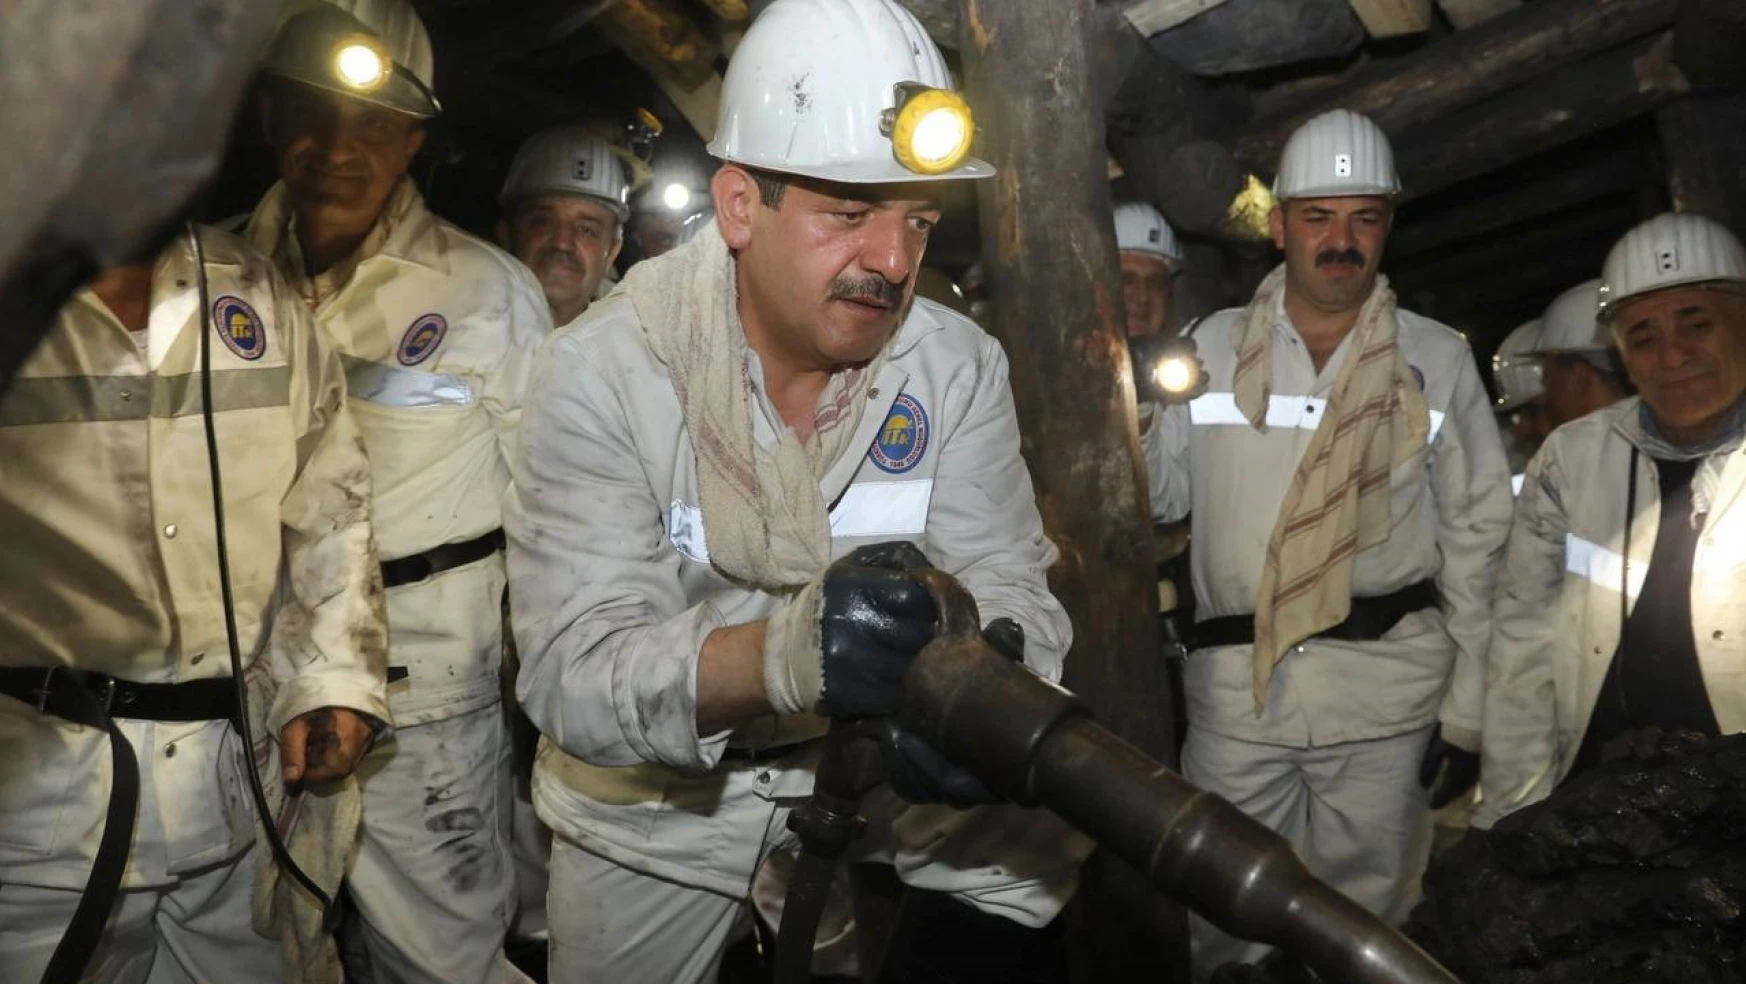 372 madenci yakını kamu kurum ve kuruluşlarında istihdam edildi